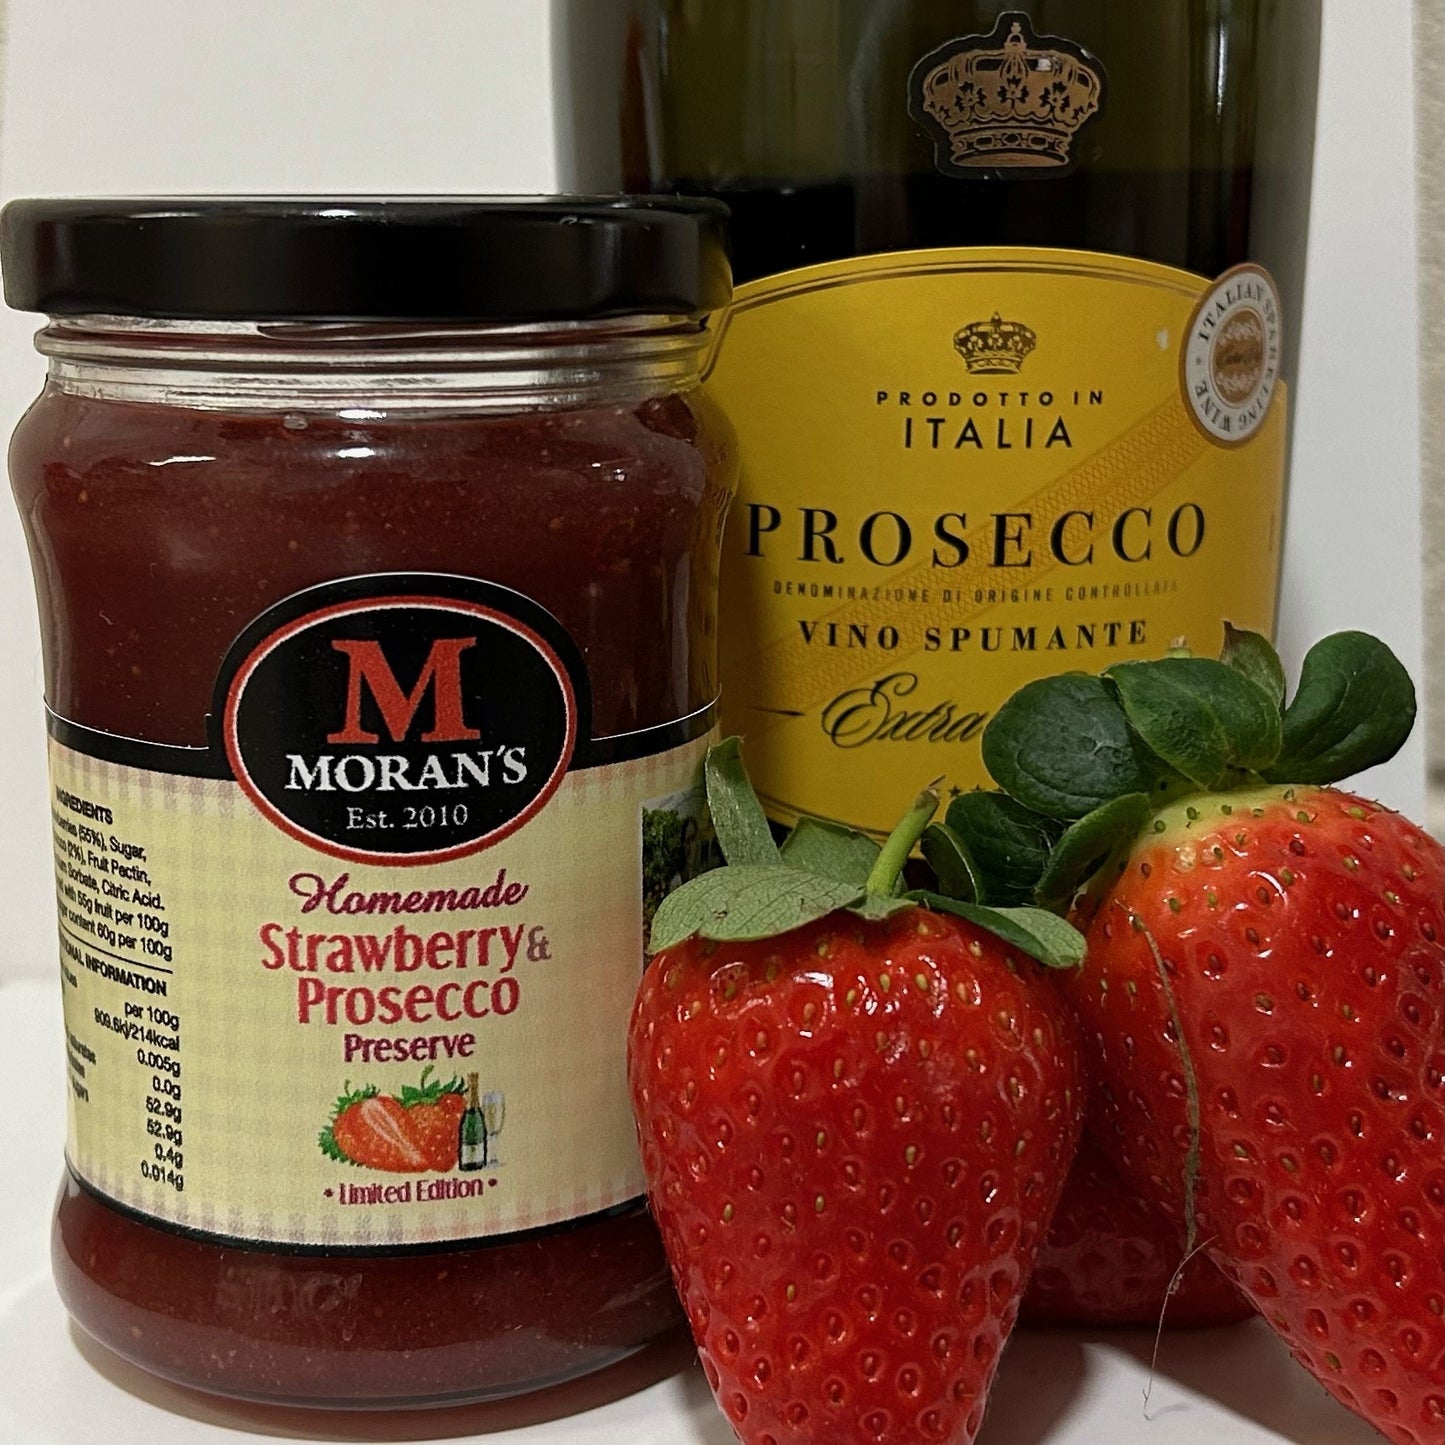 Strawberry & Prosecco Preserve